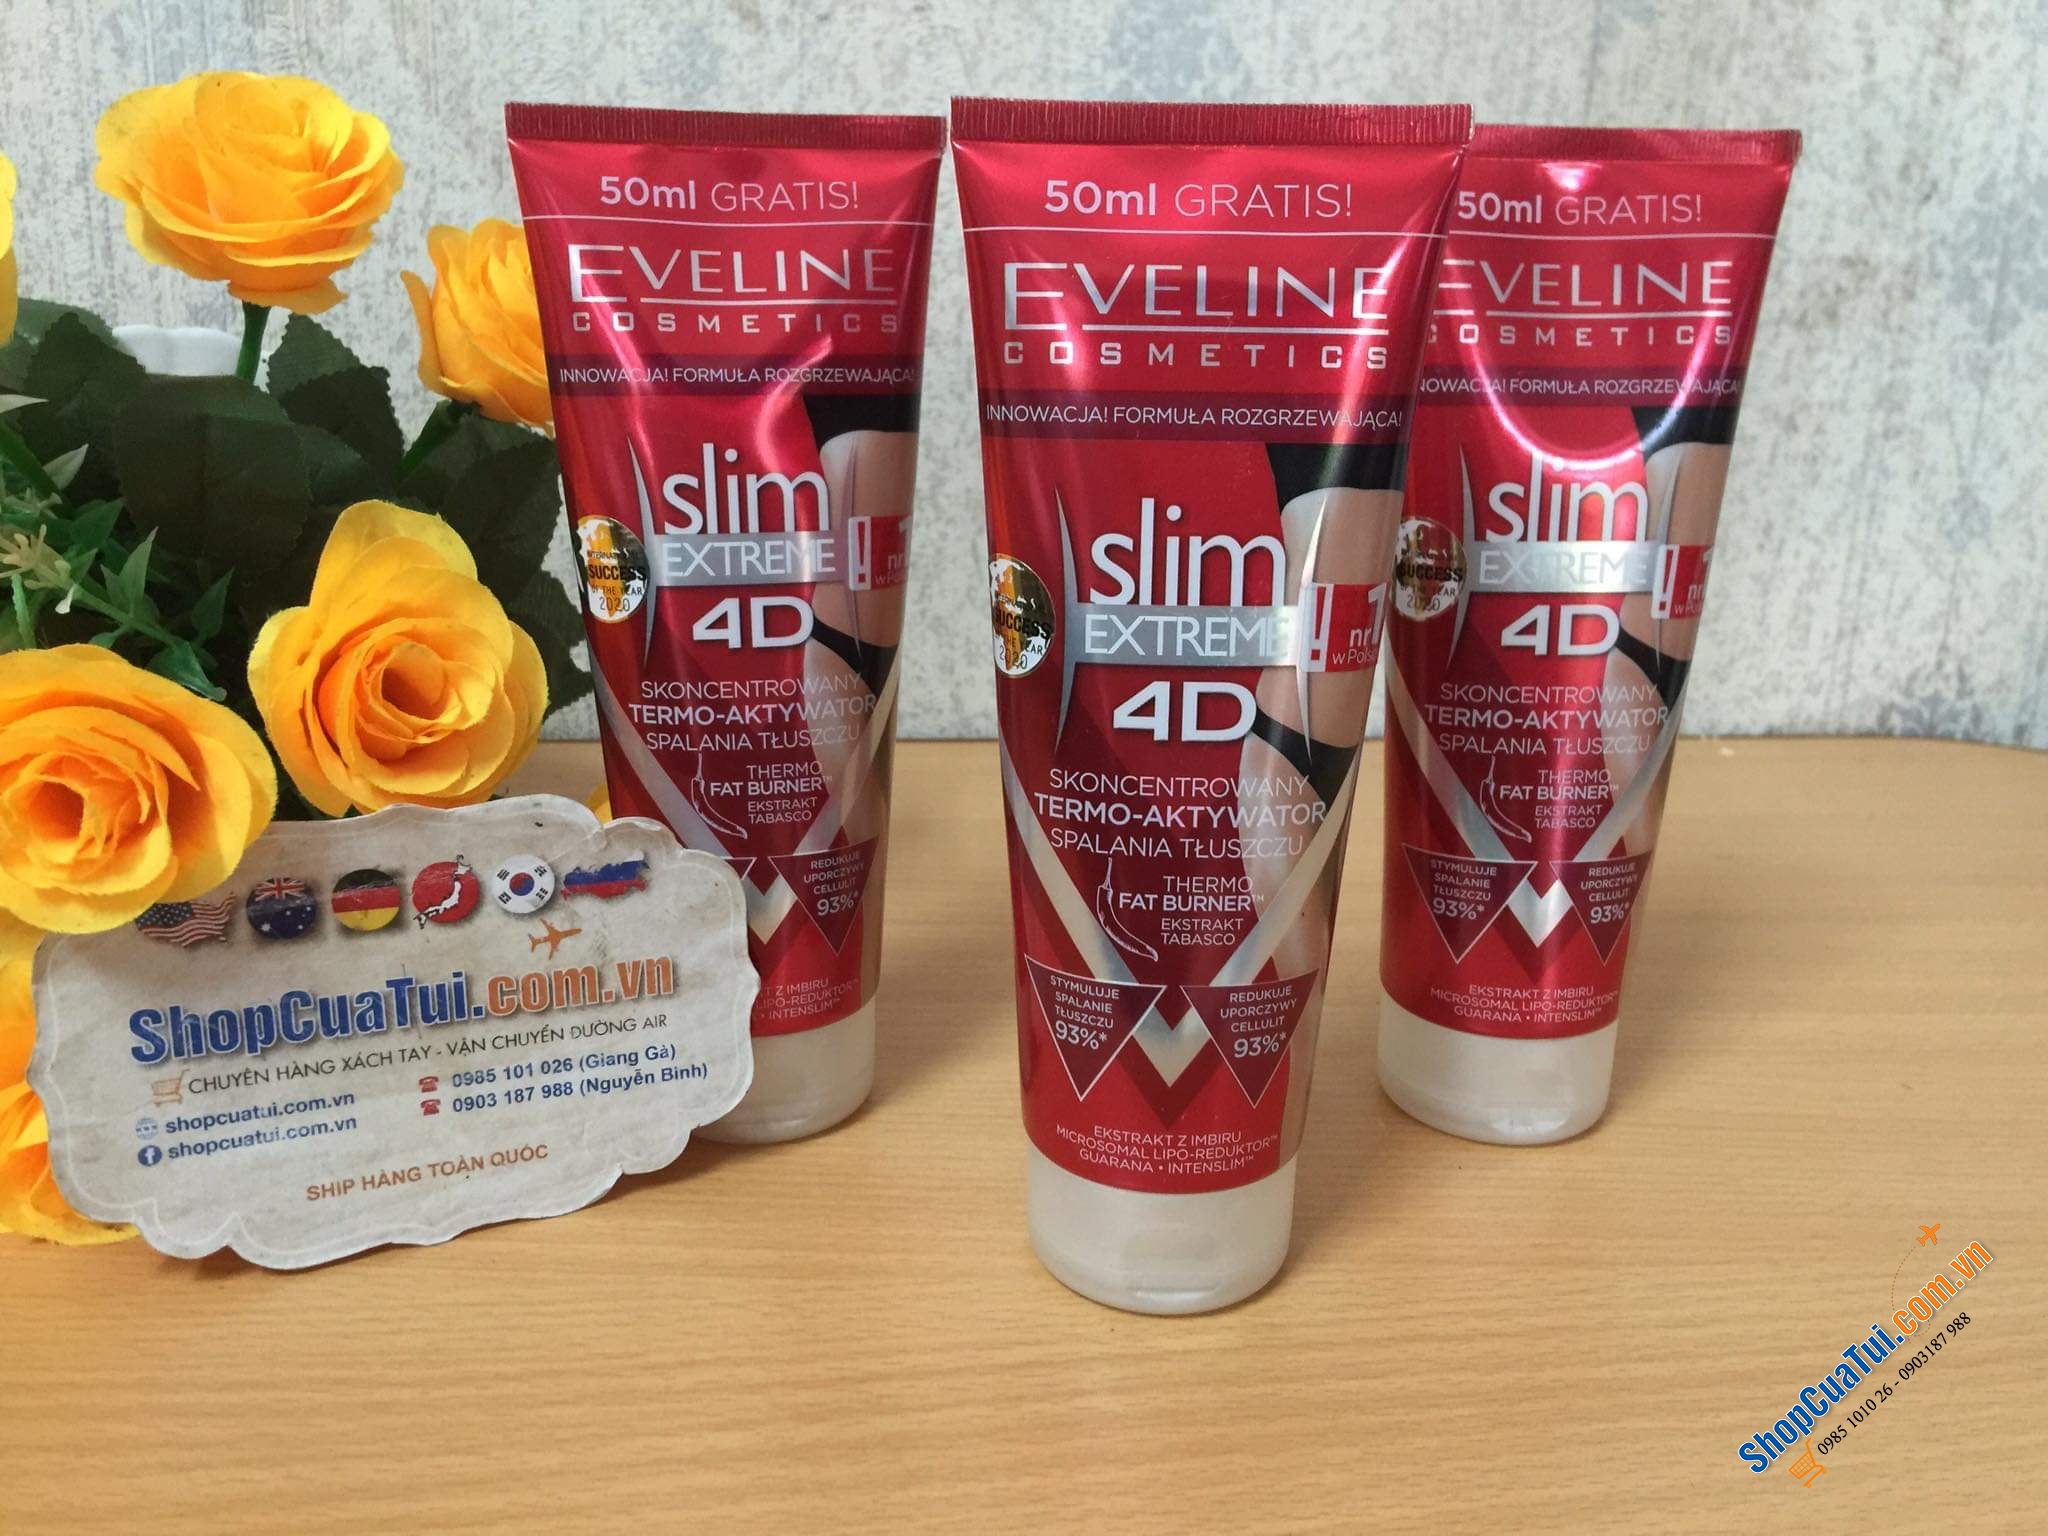 KEM TAN MỠ EVELINE SLIM EXTREM 4D  thương hiệu: Eveline của Pháp - hàng made in EU nên cực kì an toàn. Làm tan hết đống mỡ thừa, loại kem đang được hội phụ nữ ở Đức rất tin dùng.